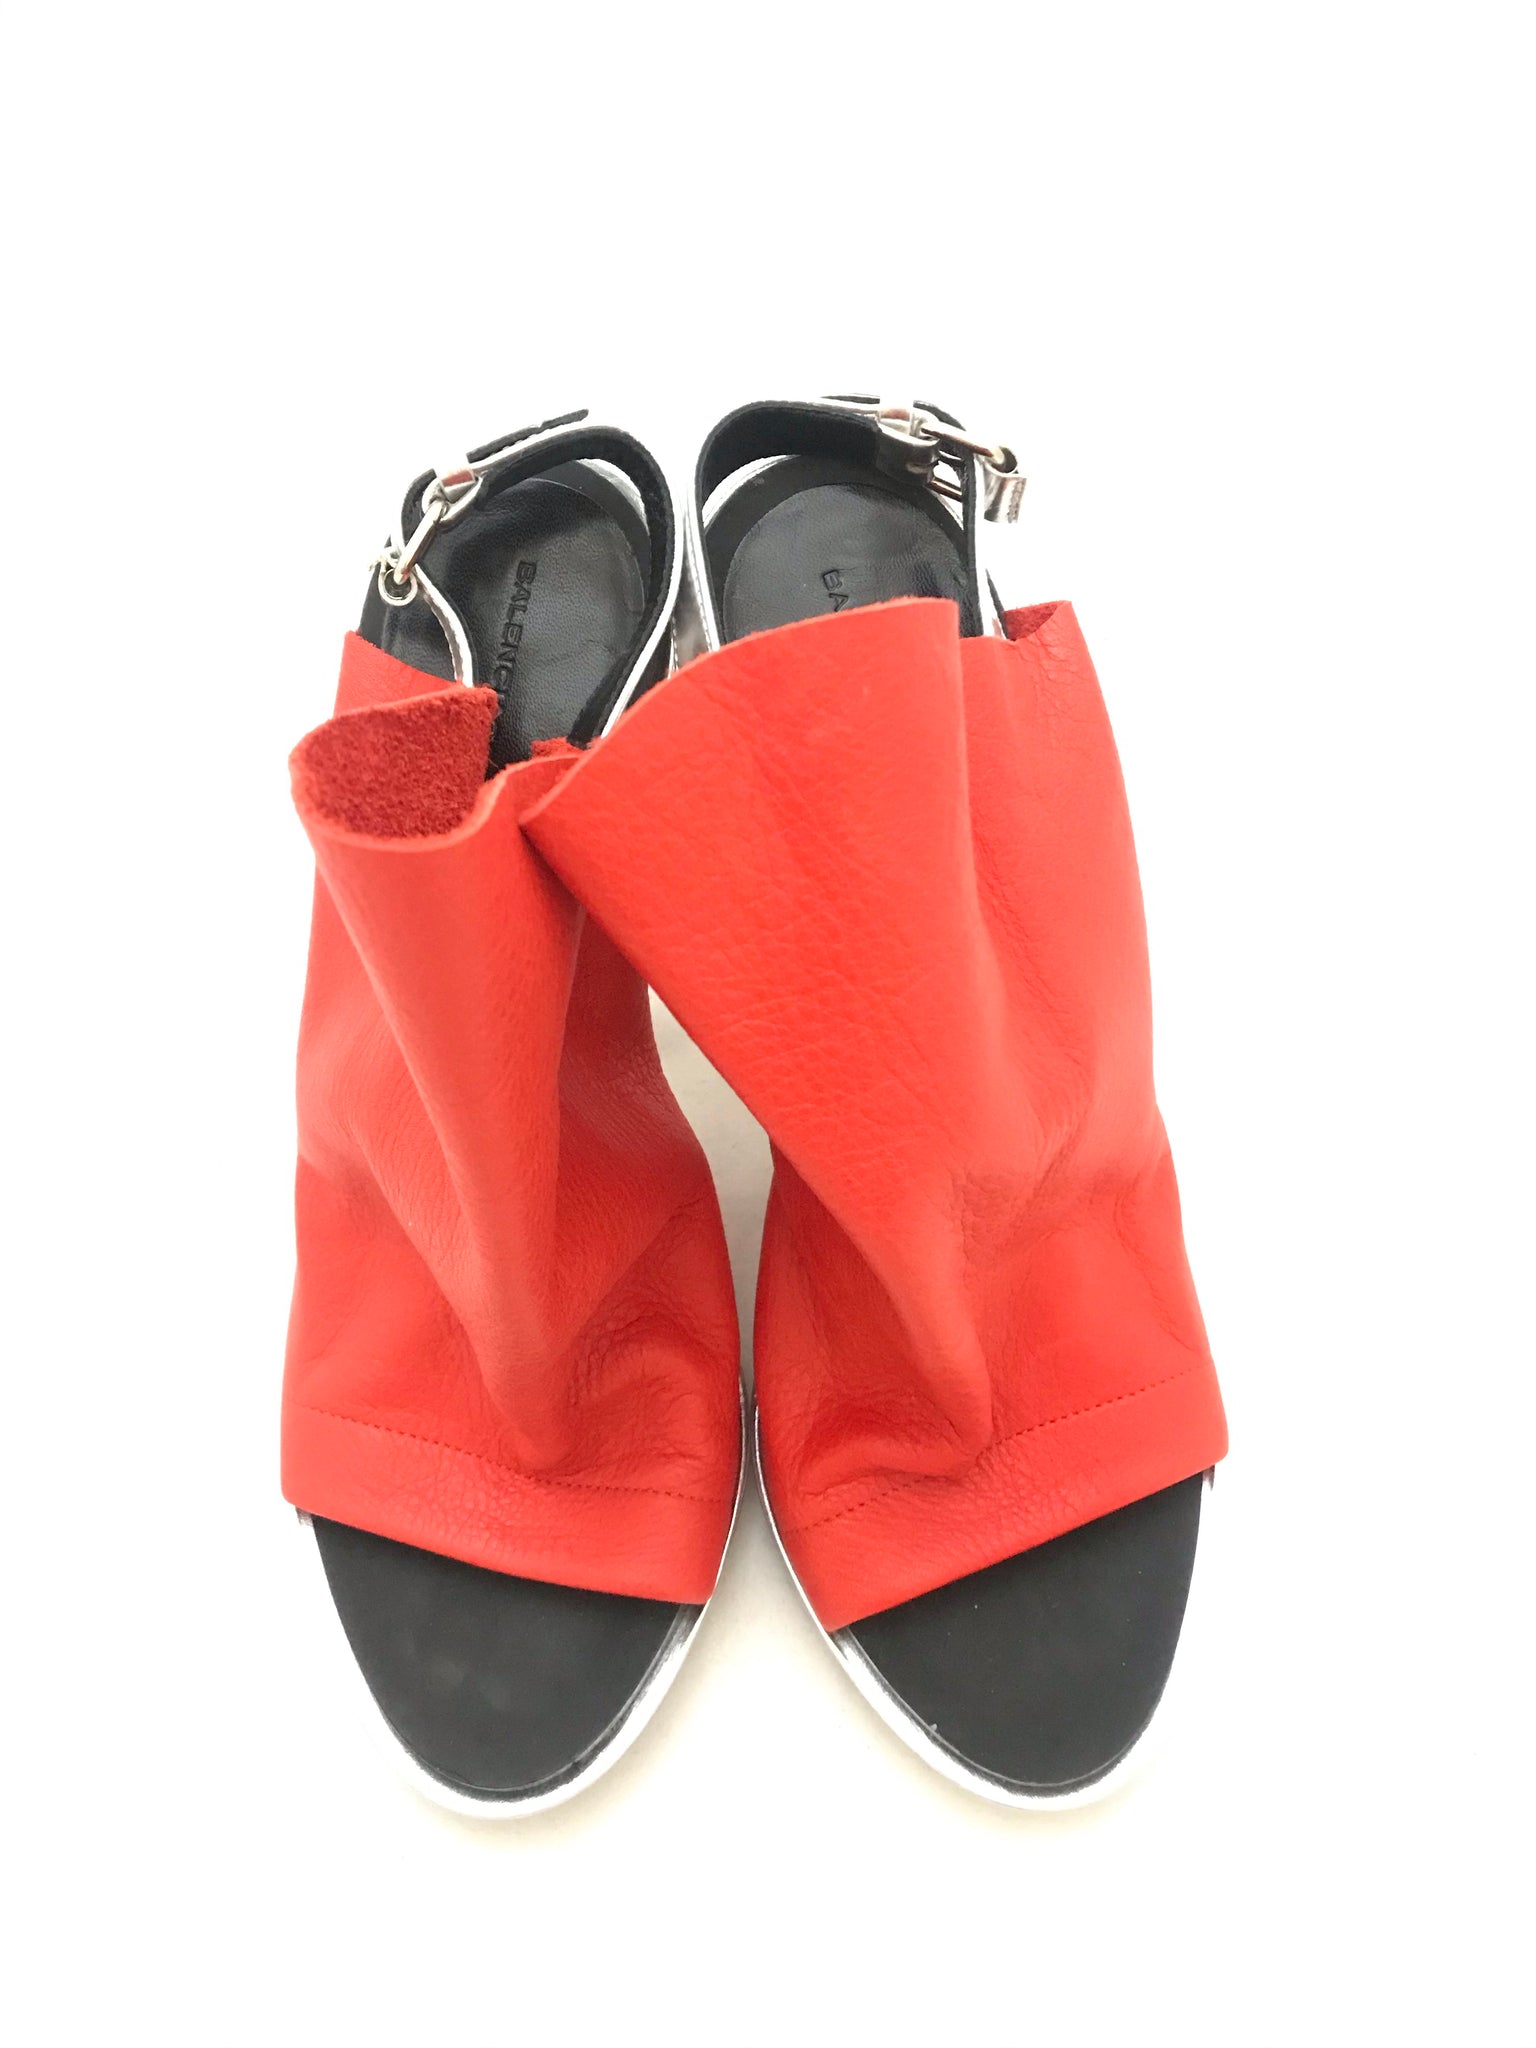 Isabella's Wardrobe Balenciaga Glove Sandals.